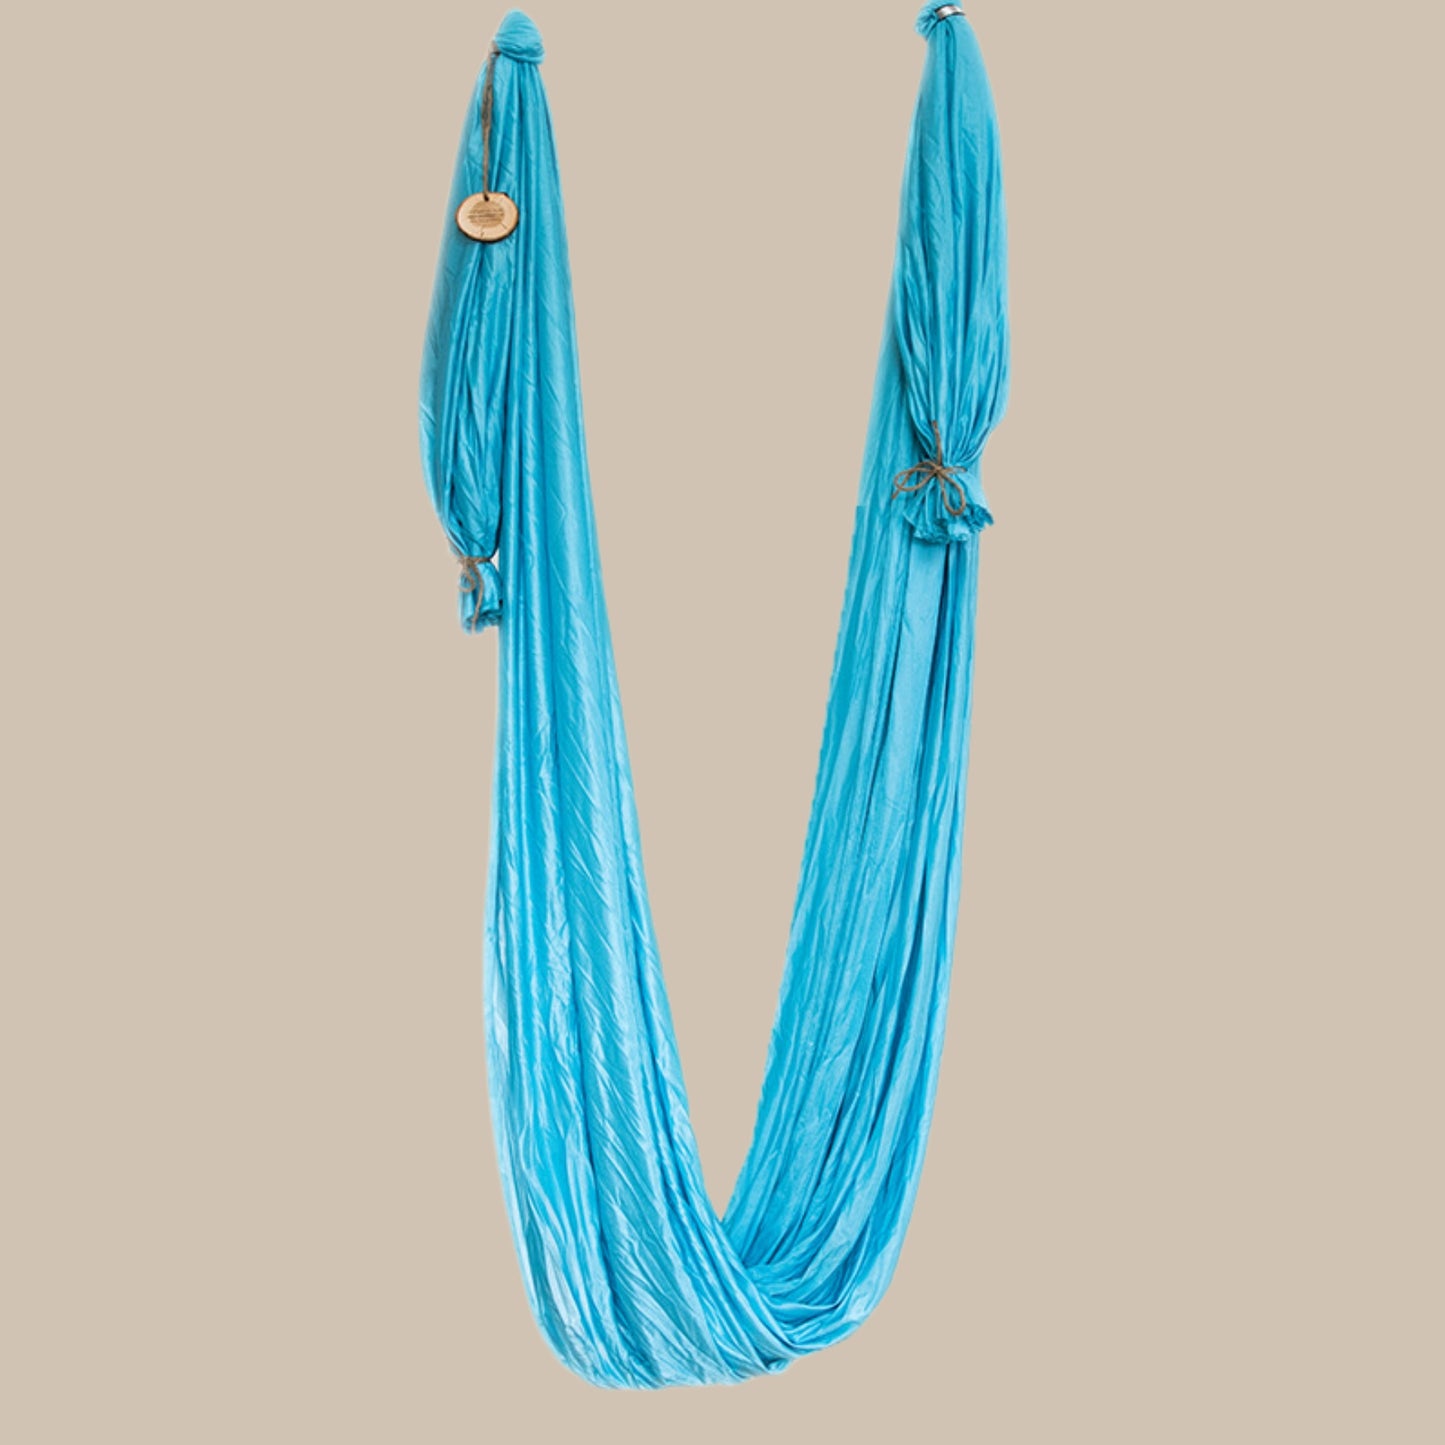 Aerial Yogatuch in sanftem Türkisblau mit Affirmation auf gravierter Baumscheibe